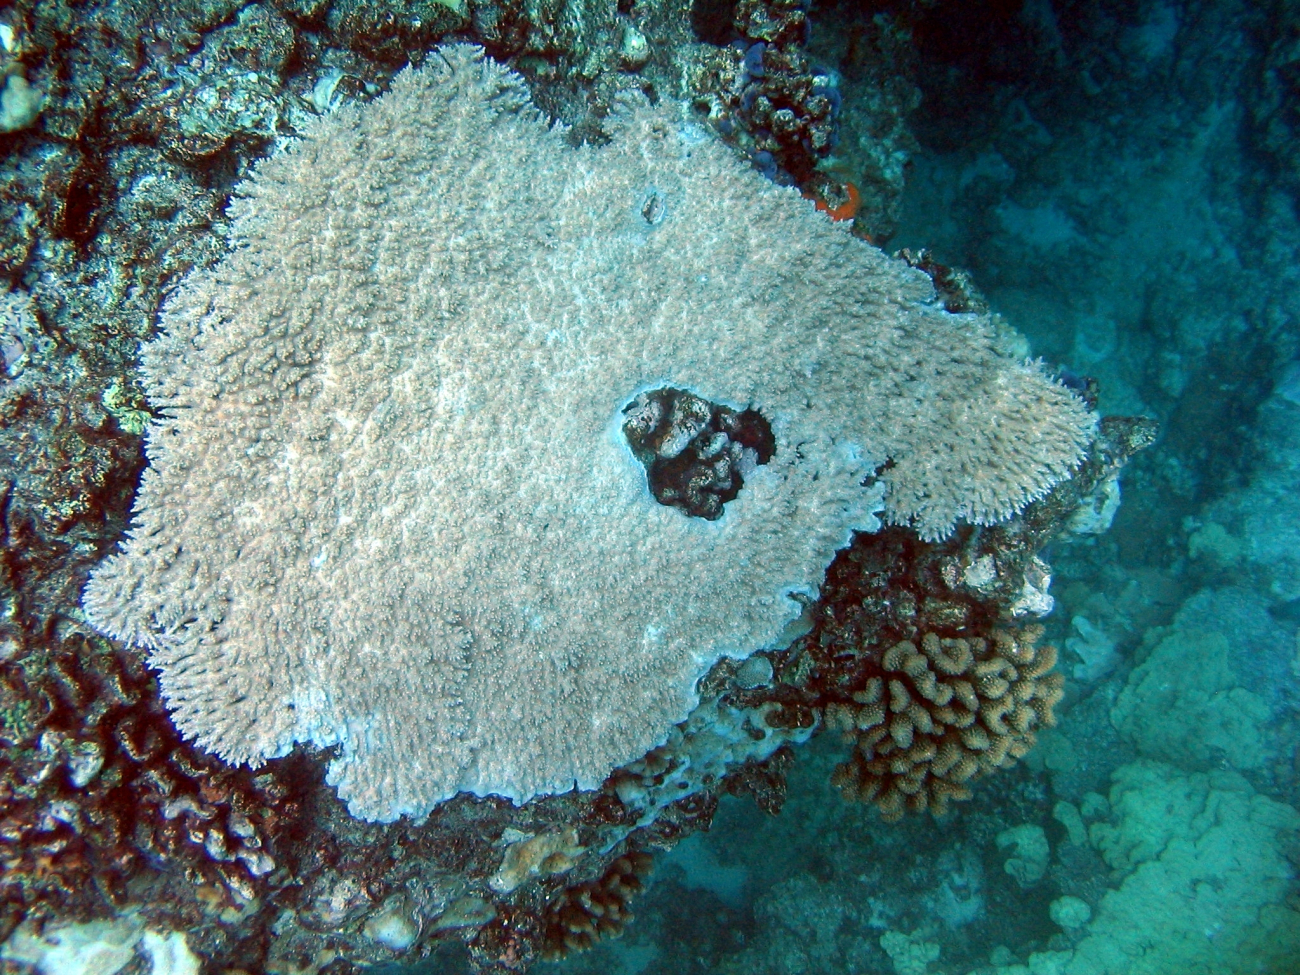 Acropora table coral (Acropora cytherea)